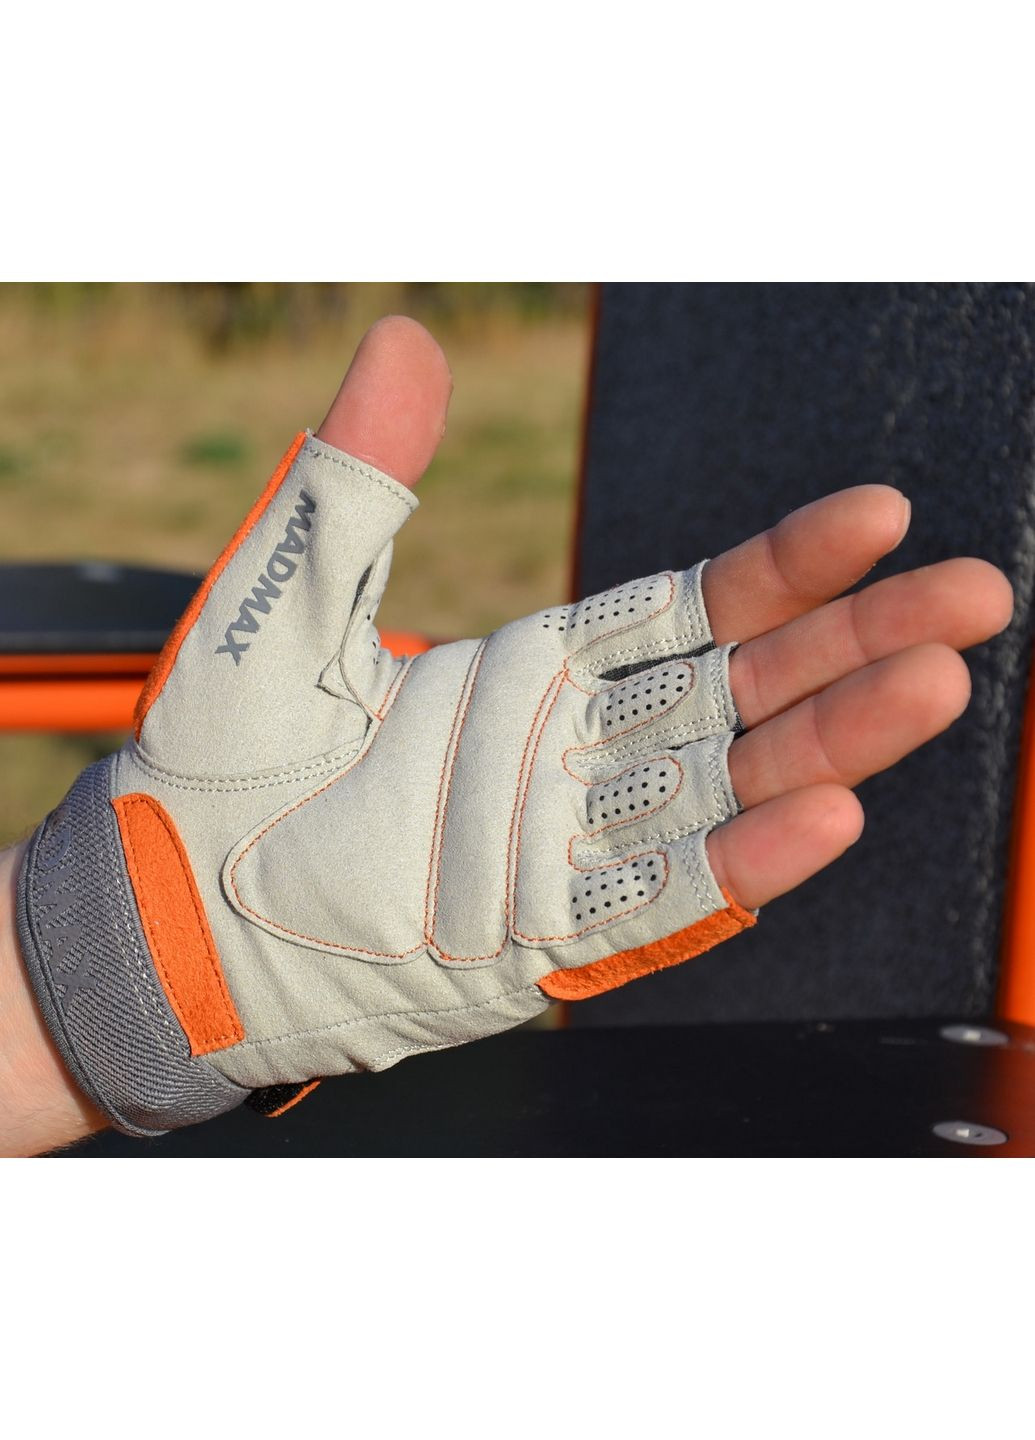 Унисекс перчатки для фитнеса M Mad Max (279321246)